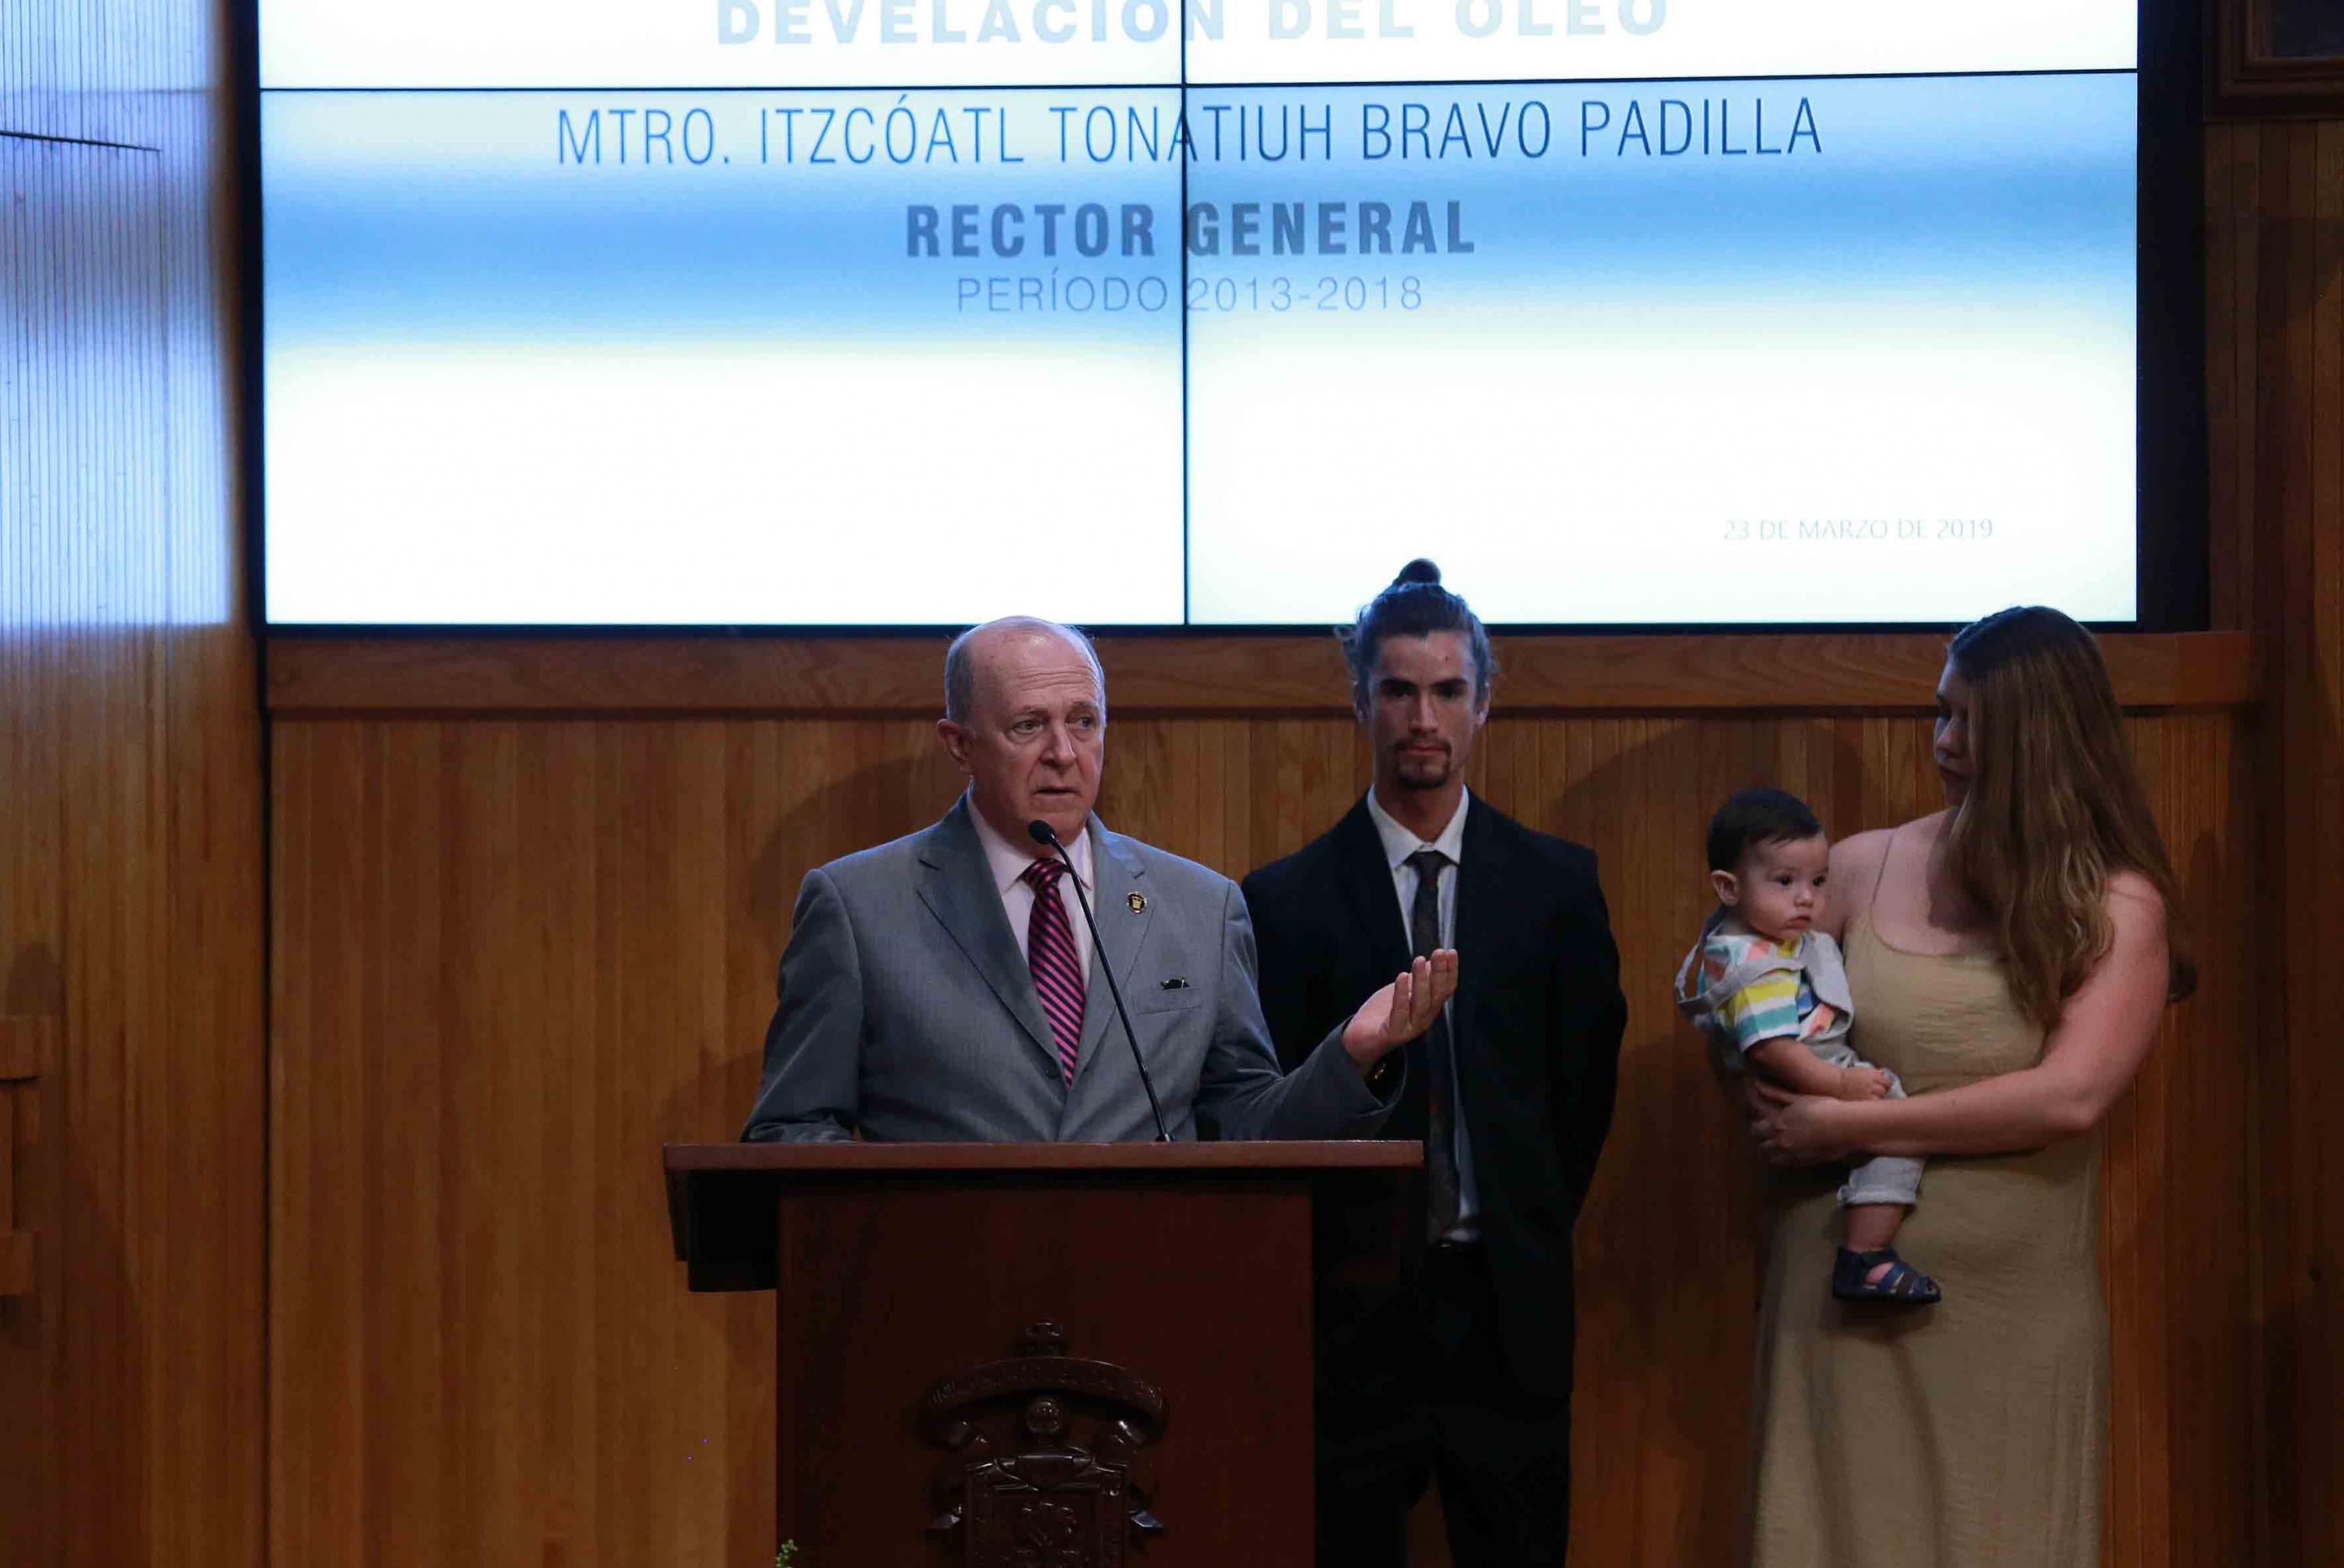 Doctor Miguel Ángel Navarro Navarro, Rector General de la Universidad de Guadalajara, frente al podio haciendo uso de la voz.